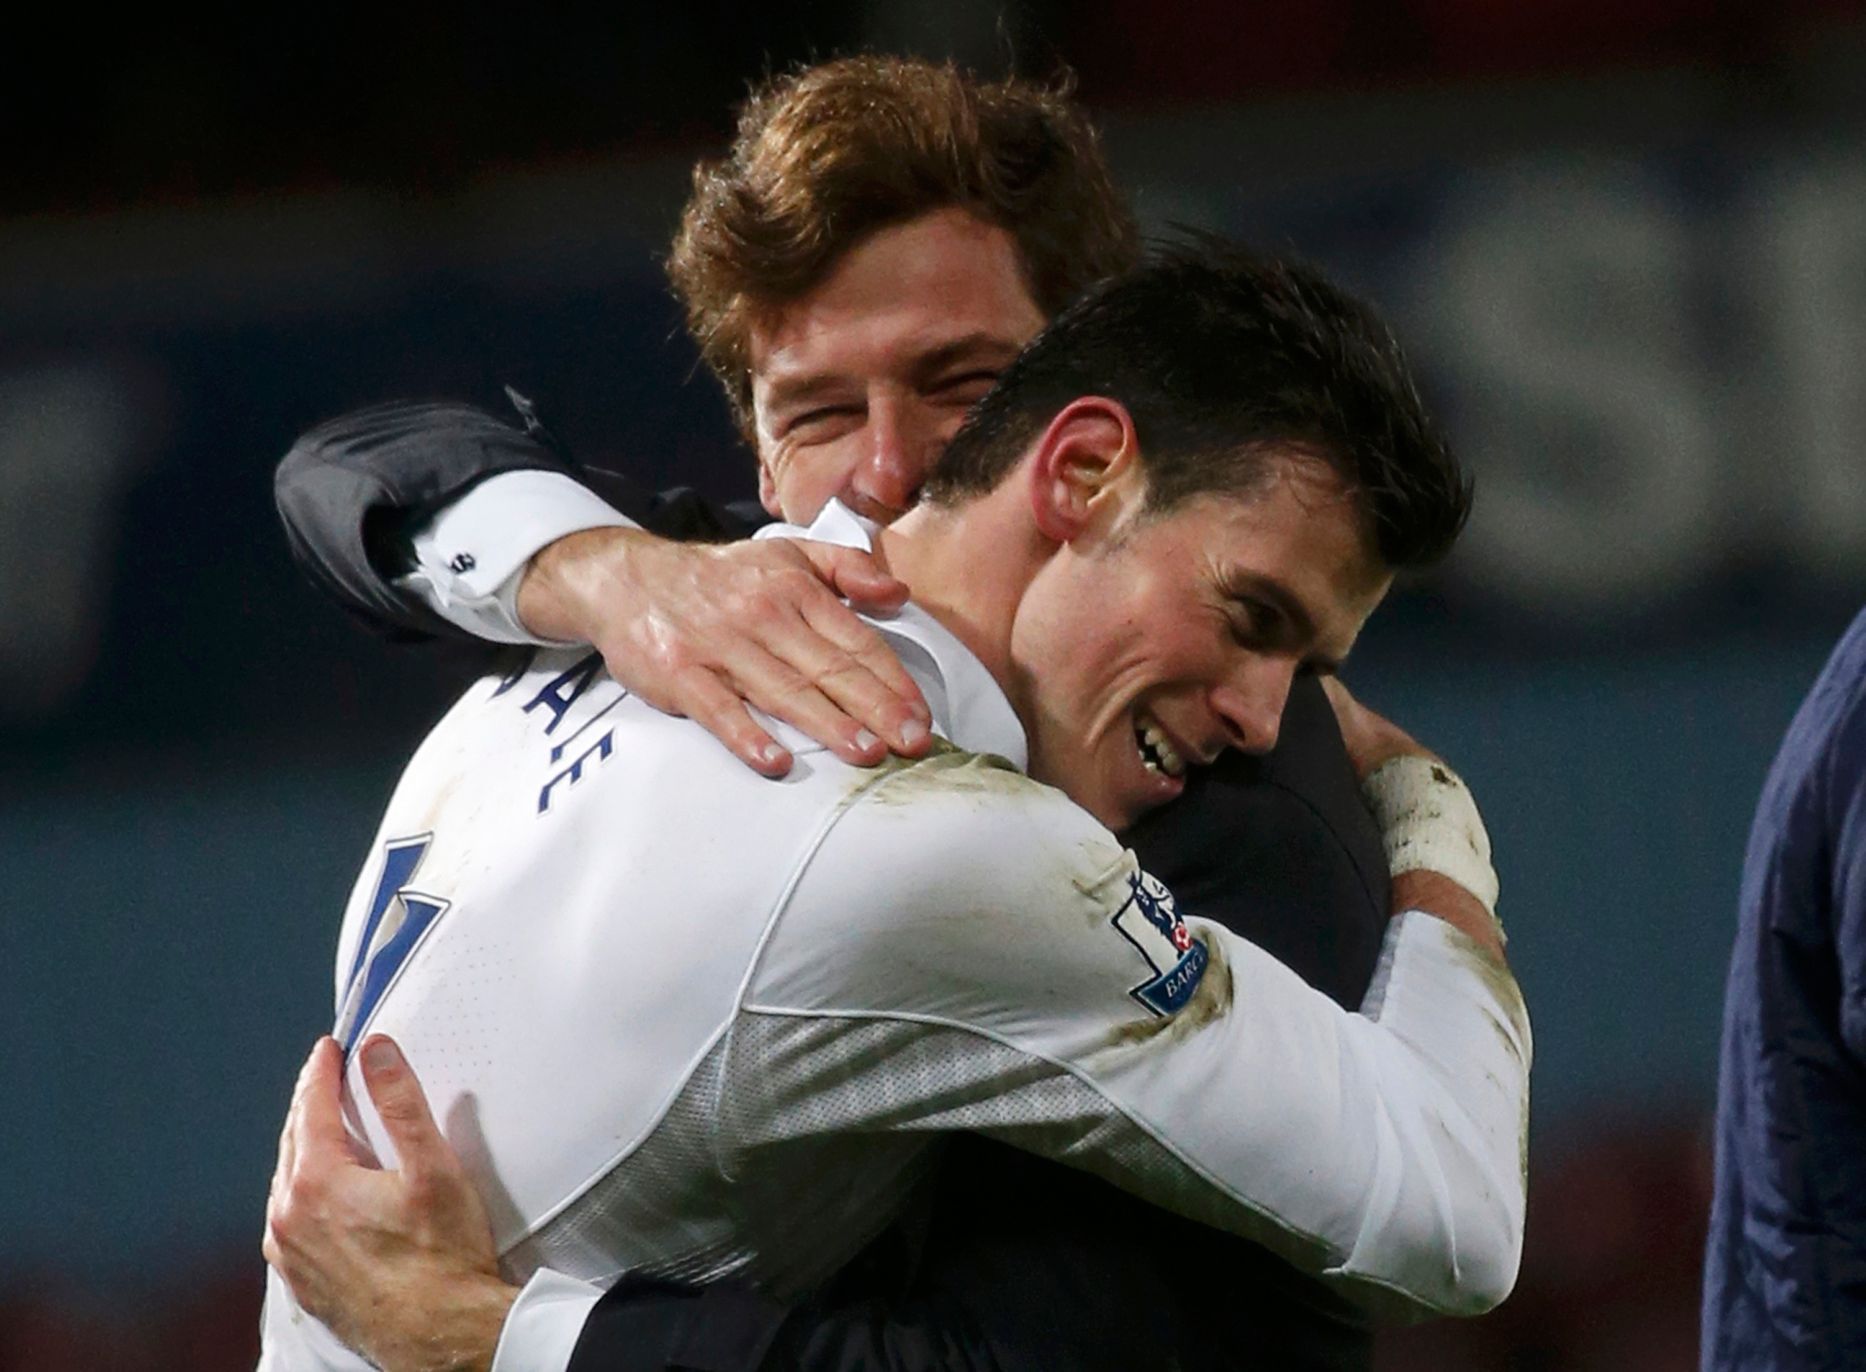 Bale v závěru dokonal obrat, Tottenham přeskočil Chelsea